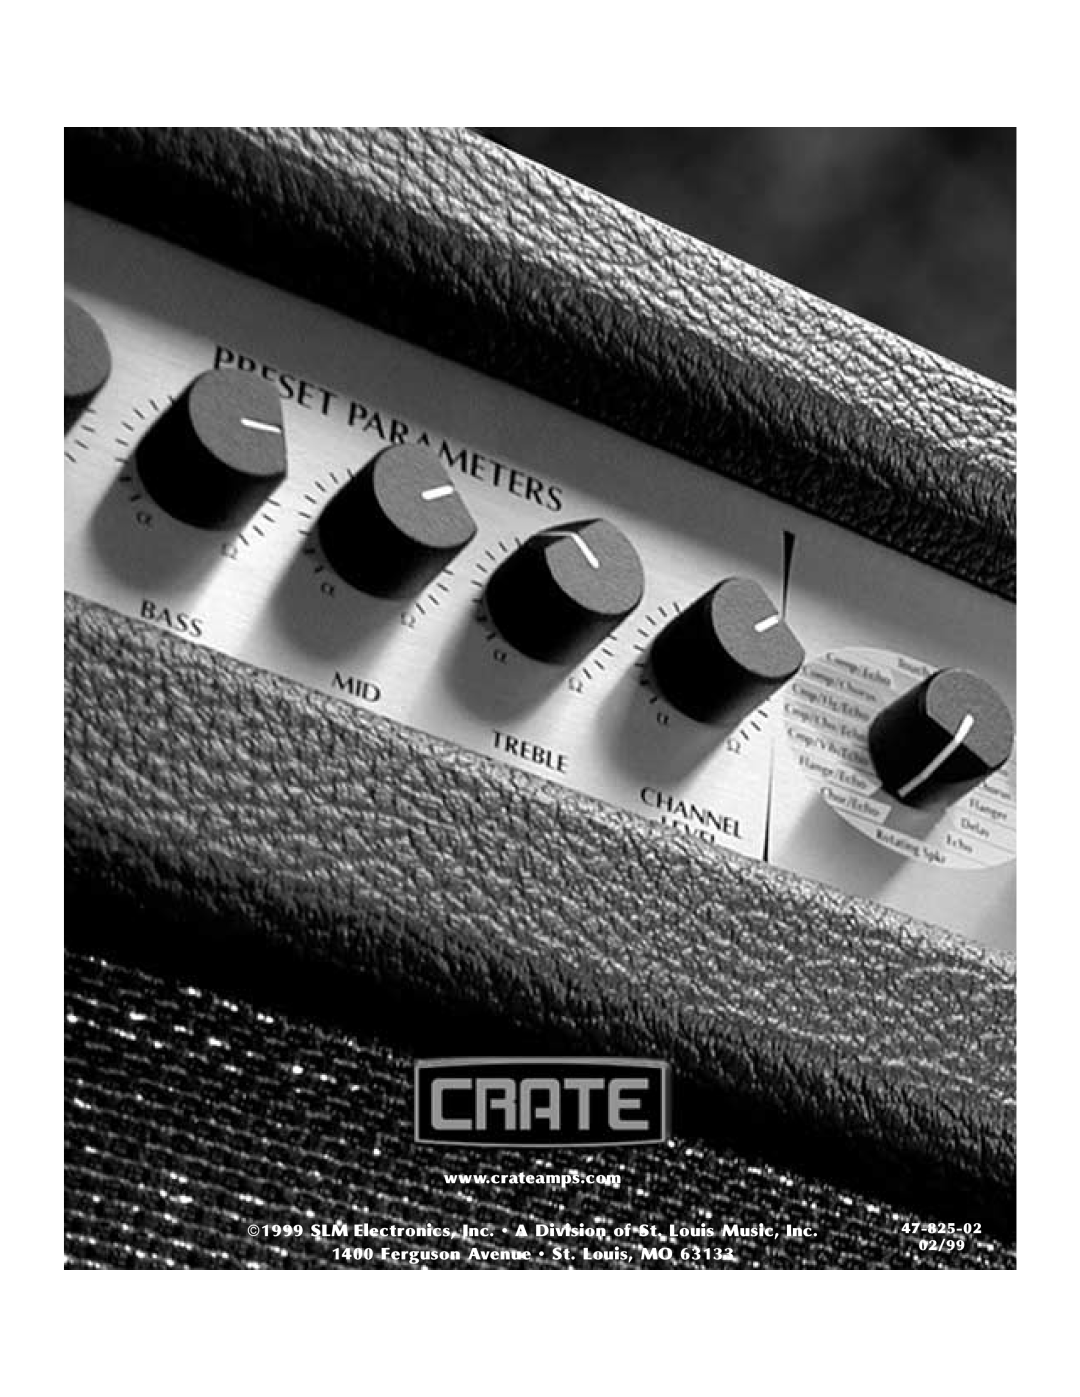 Crate Amplifiers DX-112, DX-212 manual Ferguson Avenue St. Louis, MO, 47-825-02, 02/99 